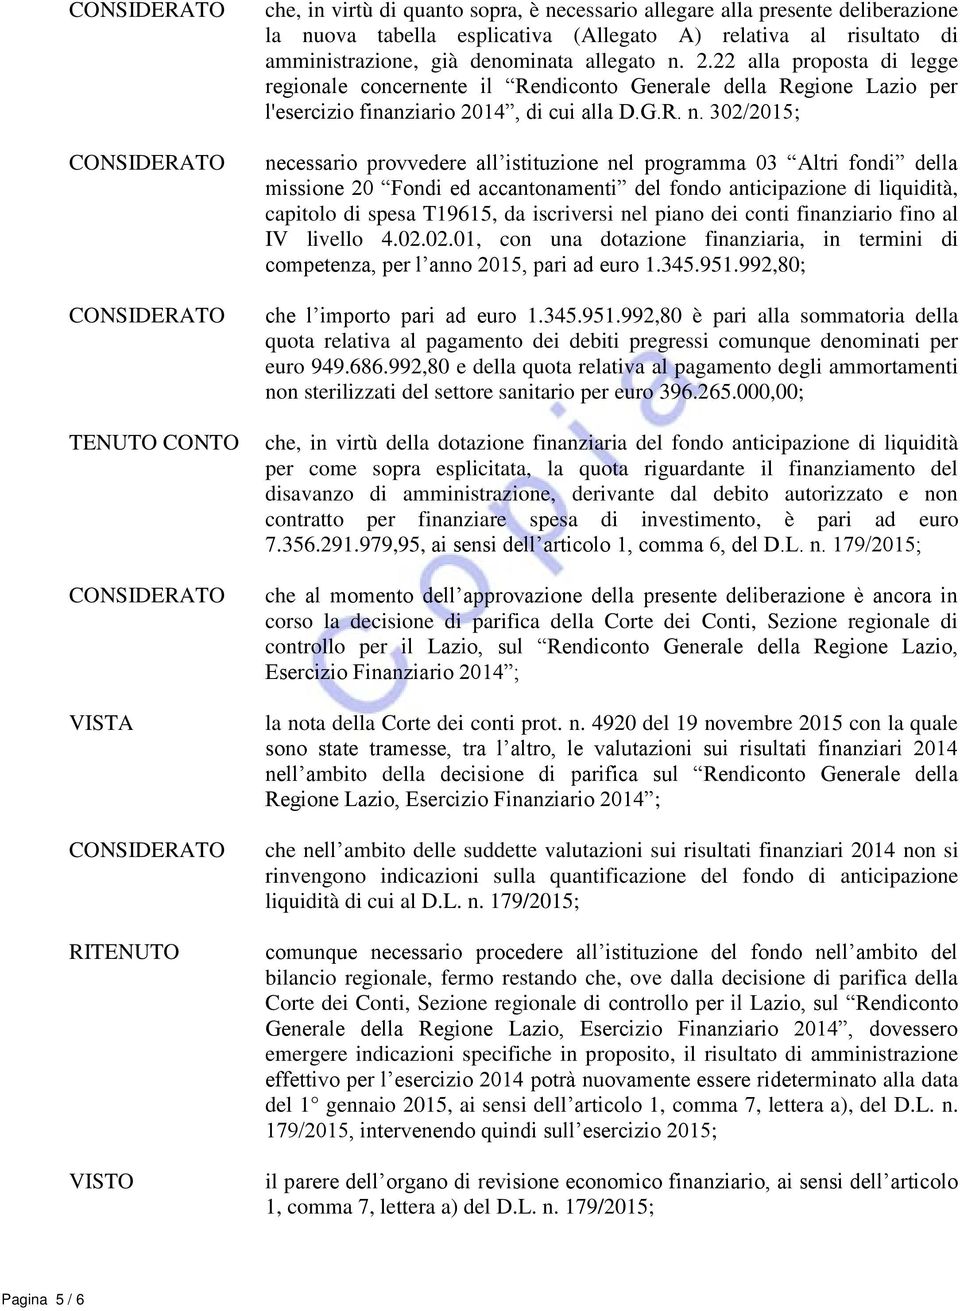 2.22 alla proposta di legge regionale concernente il Rendiconto Generale della Regione Lazio per l'esercizio finanziario 2014, di cui alla D.G.R. n.